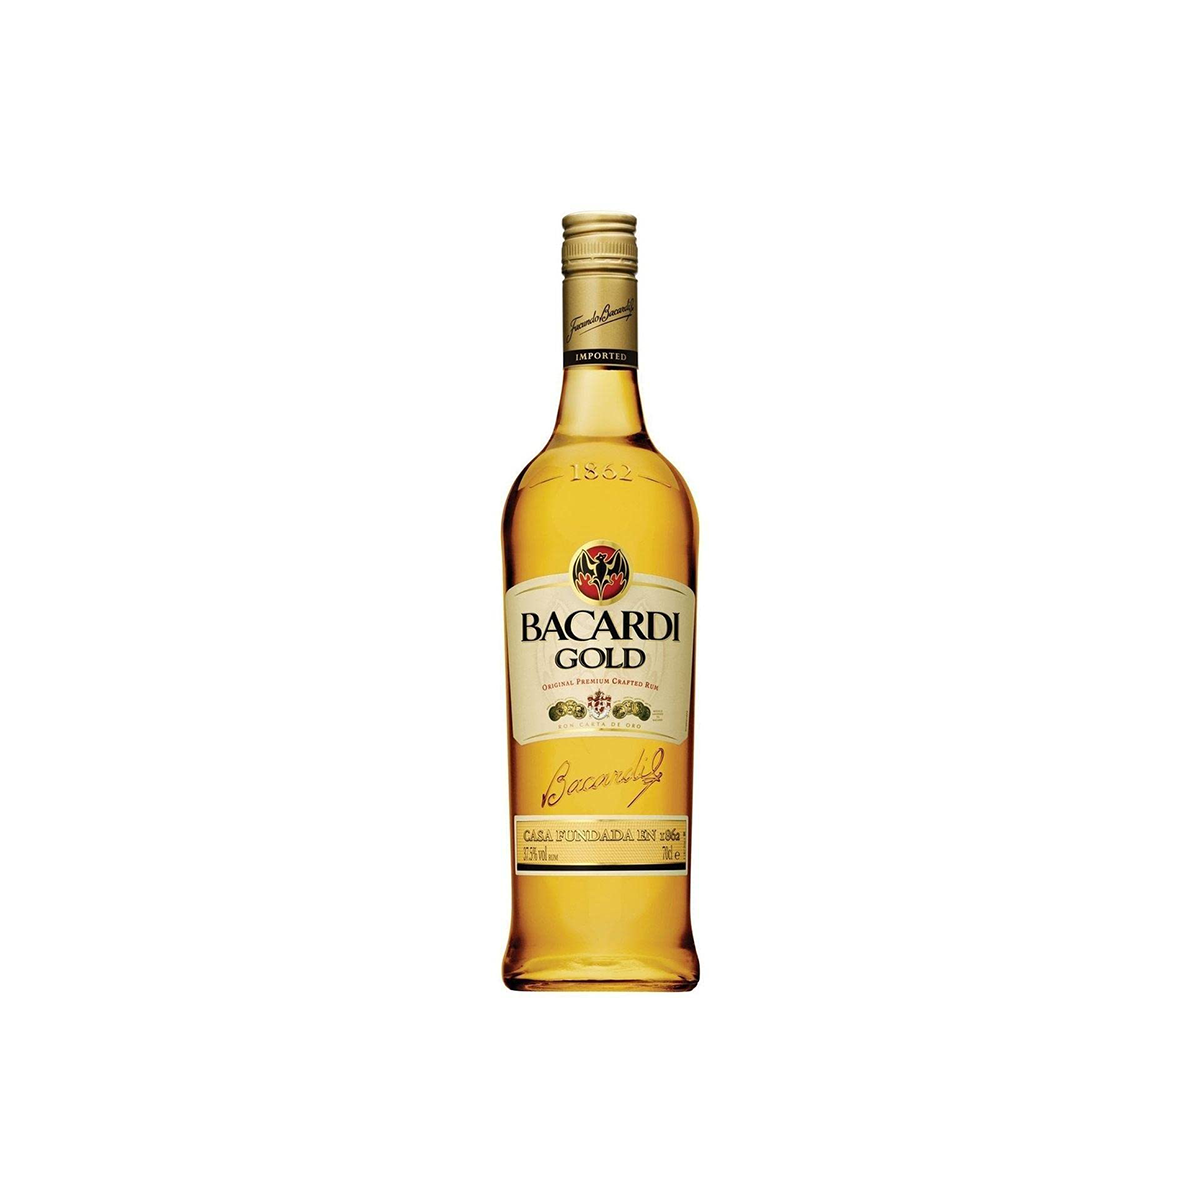 Bacardi gold 10y rum